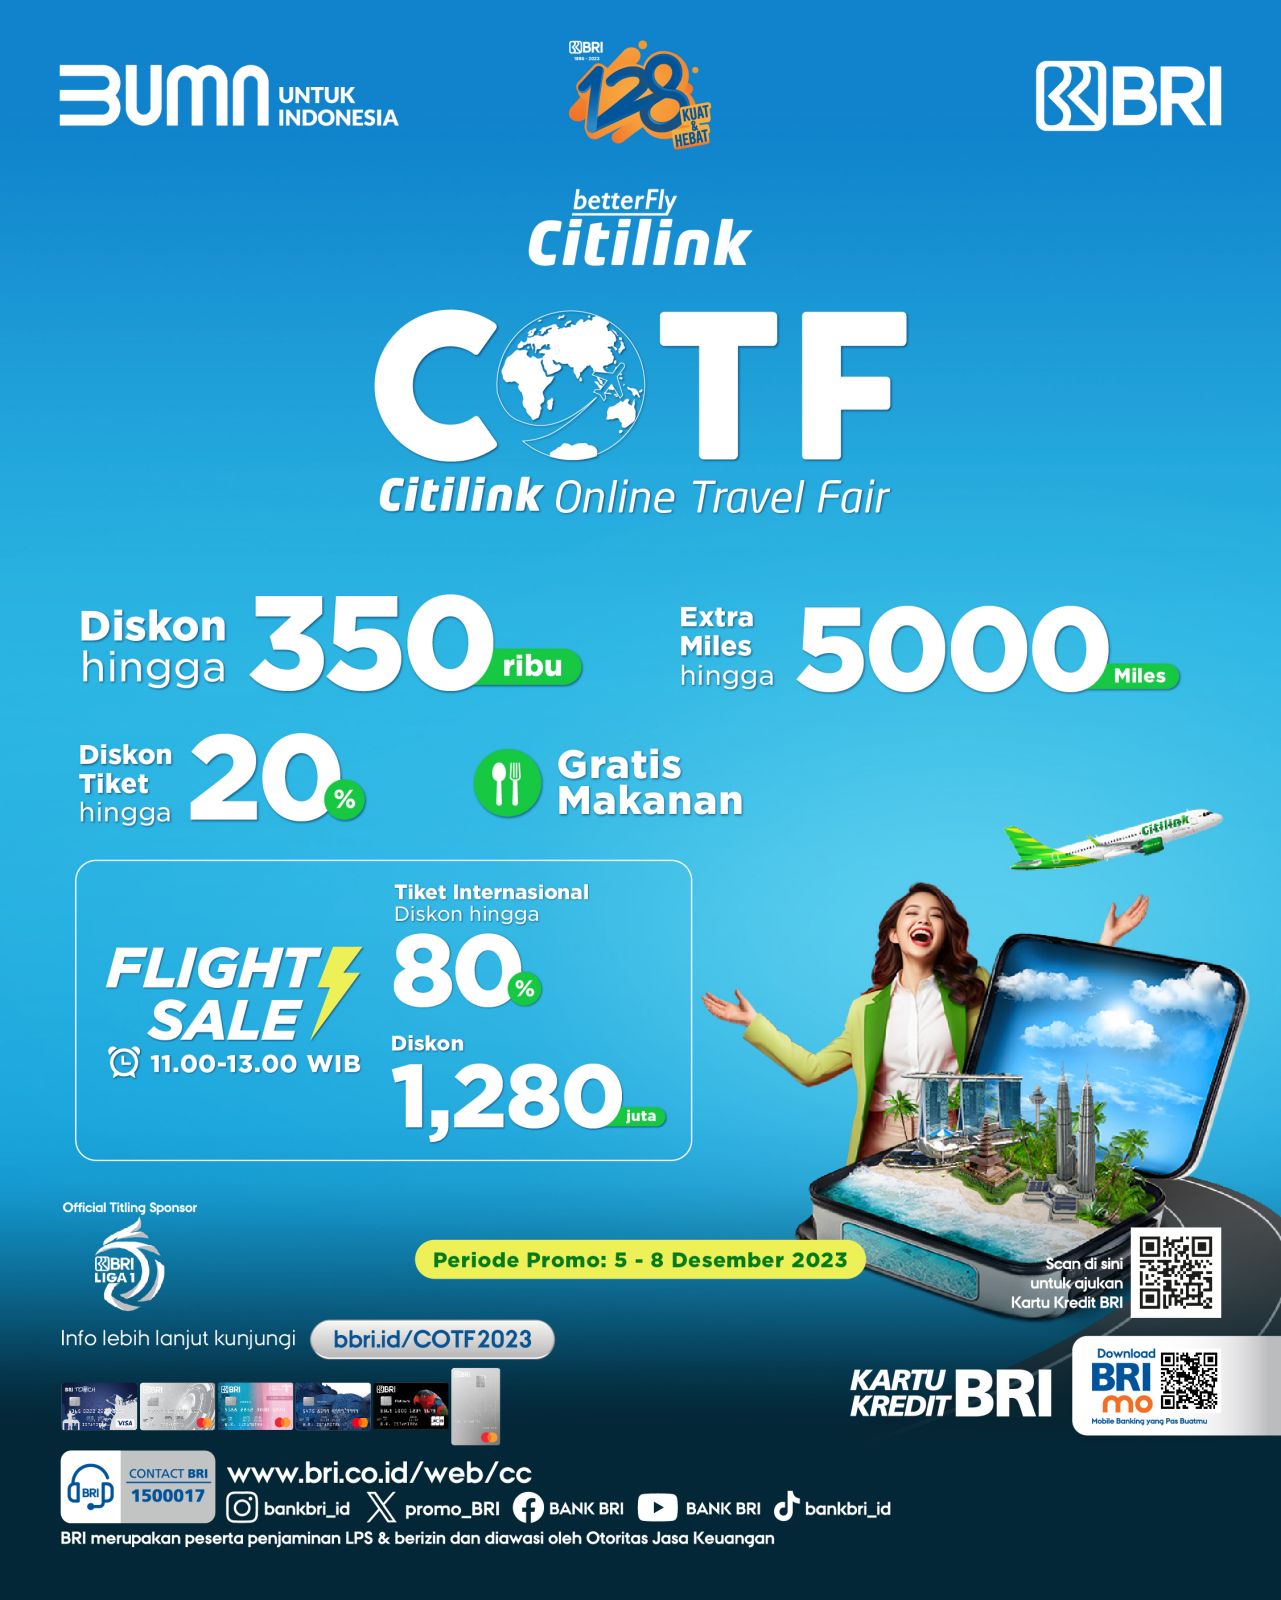 BRI Citilink Online Travel Fair 2023, Dukung Gerakan Bangga Berwisata Indonesia